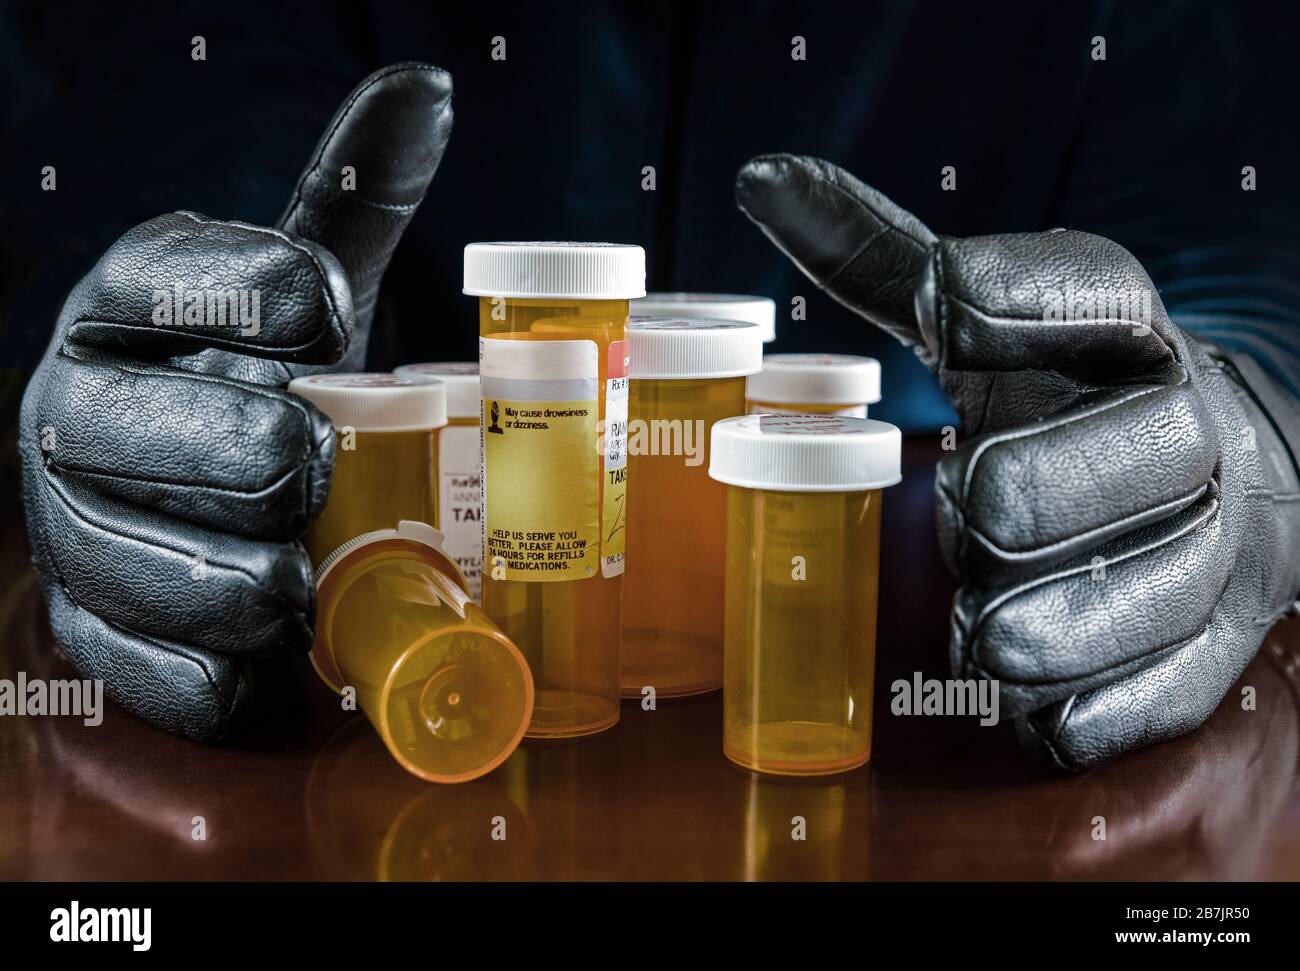 Dos manos enguantadas tratando de agarrar todos los envases de la medicina. Foto de stock